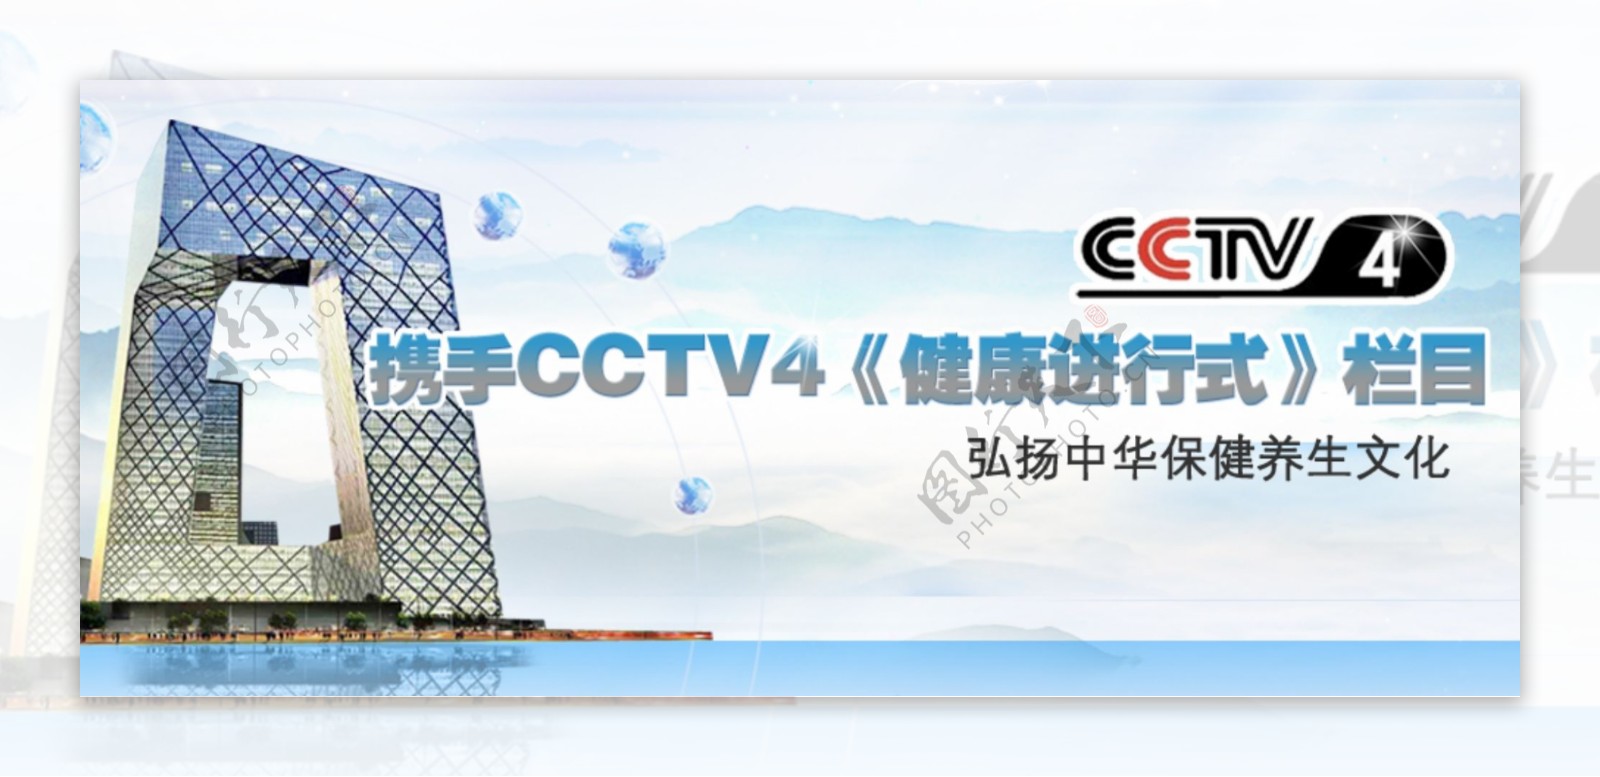 CCTV4栏目素材